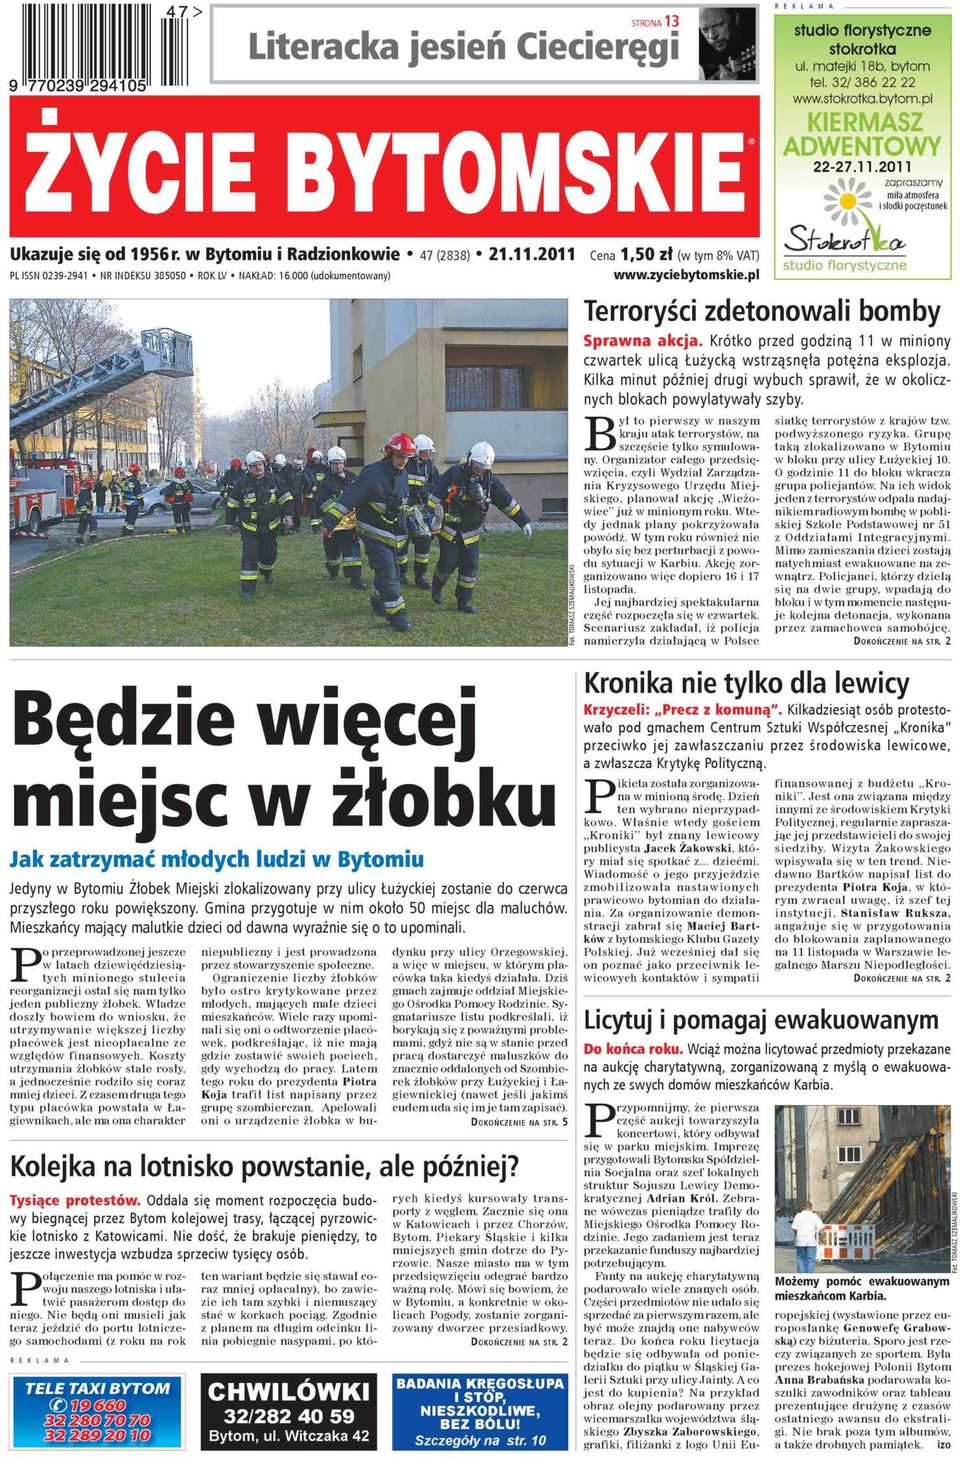 zyciebytomskie.pl PL ISSN 0239-2941 NR INDEKSU 385050 RK LV NAKŁAD: 16.000 (udokumentowany) o studio florystyczne Terroryści zdetonowali bomby Sprawna akcja.